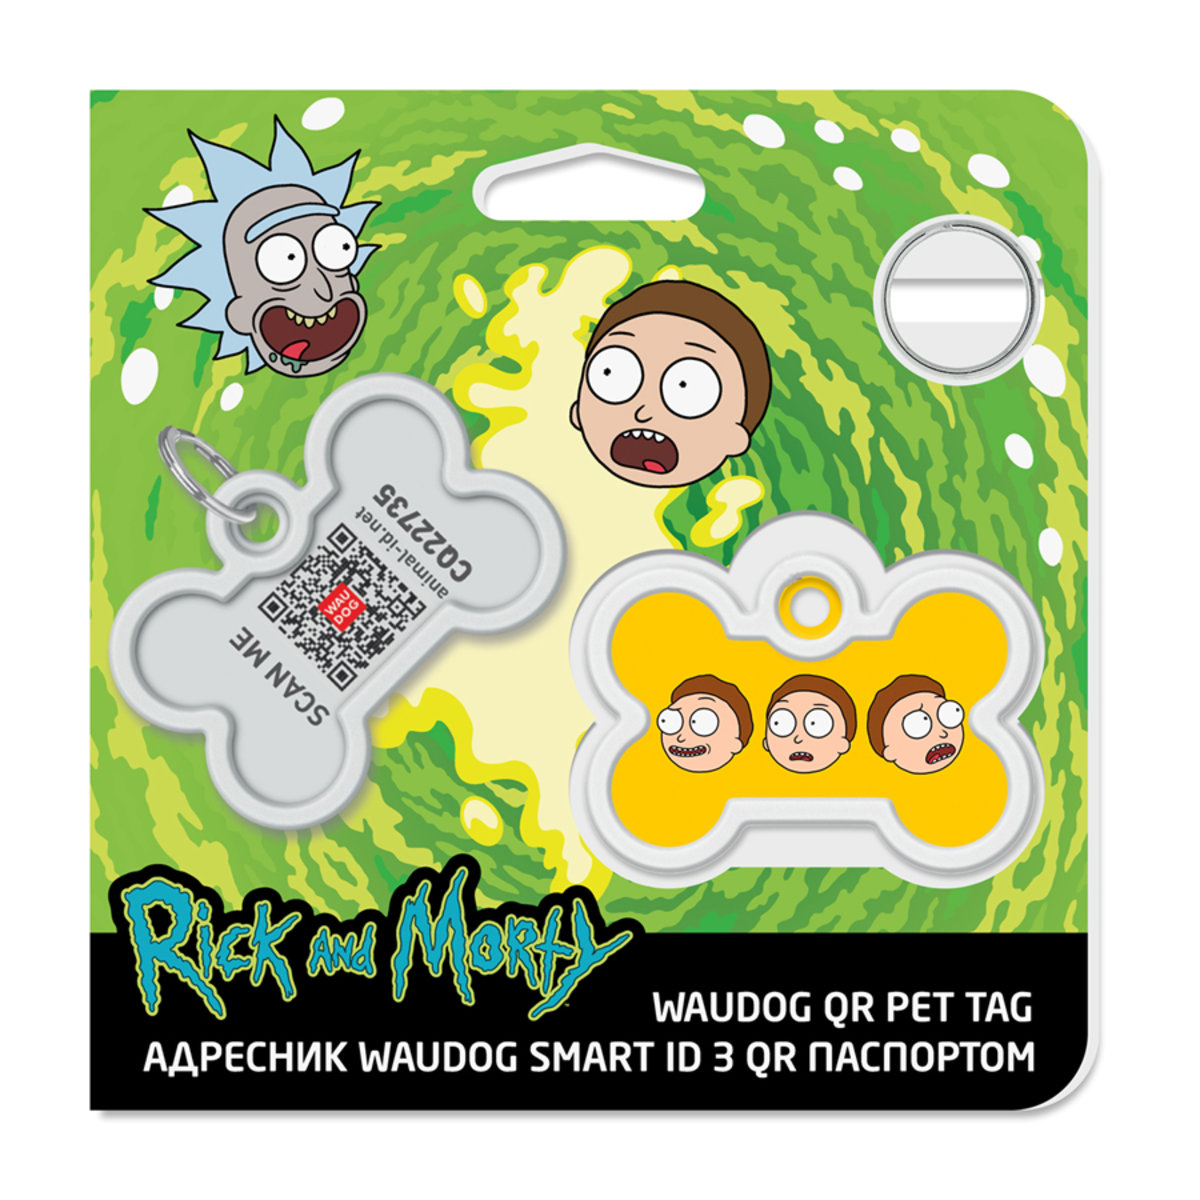 Адресник для собак и кошек Waudog Smart ID с QR паспортом, Рик и Морти 2, L, 40х28 мм - фото 4